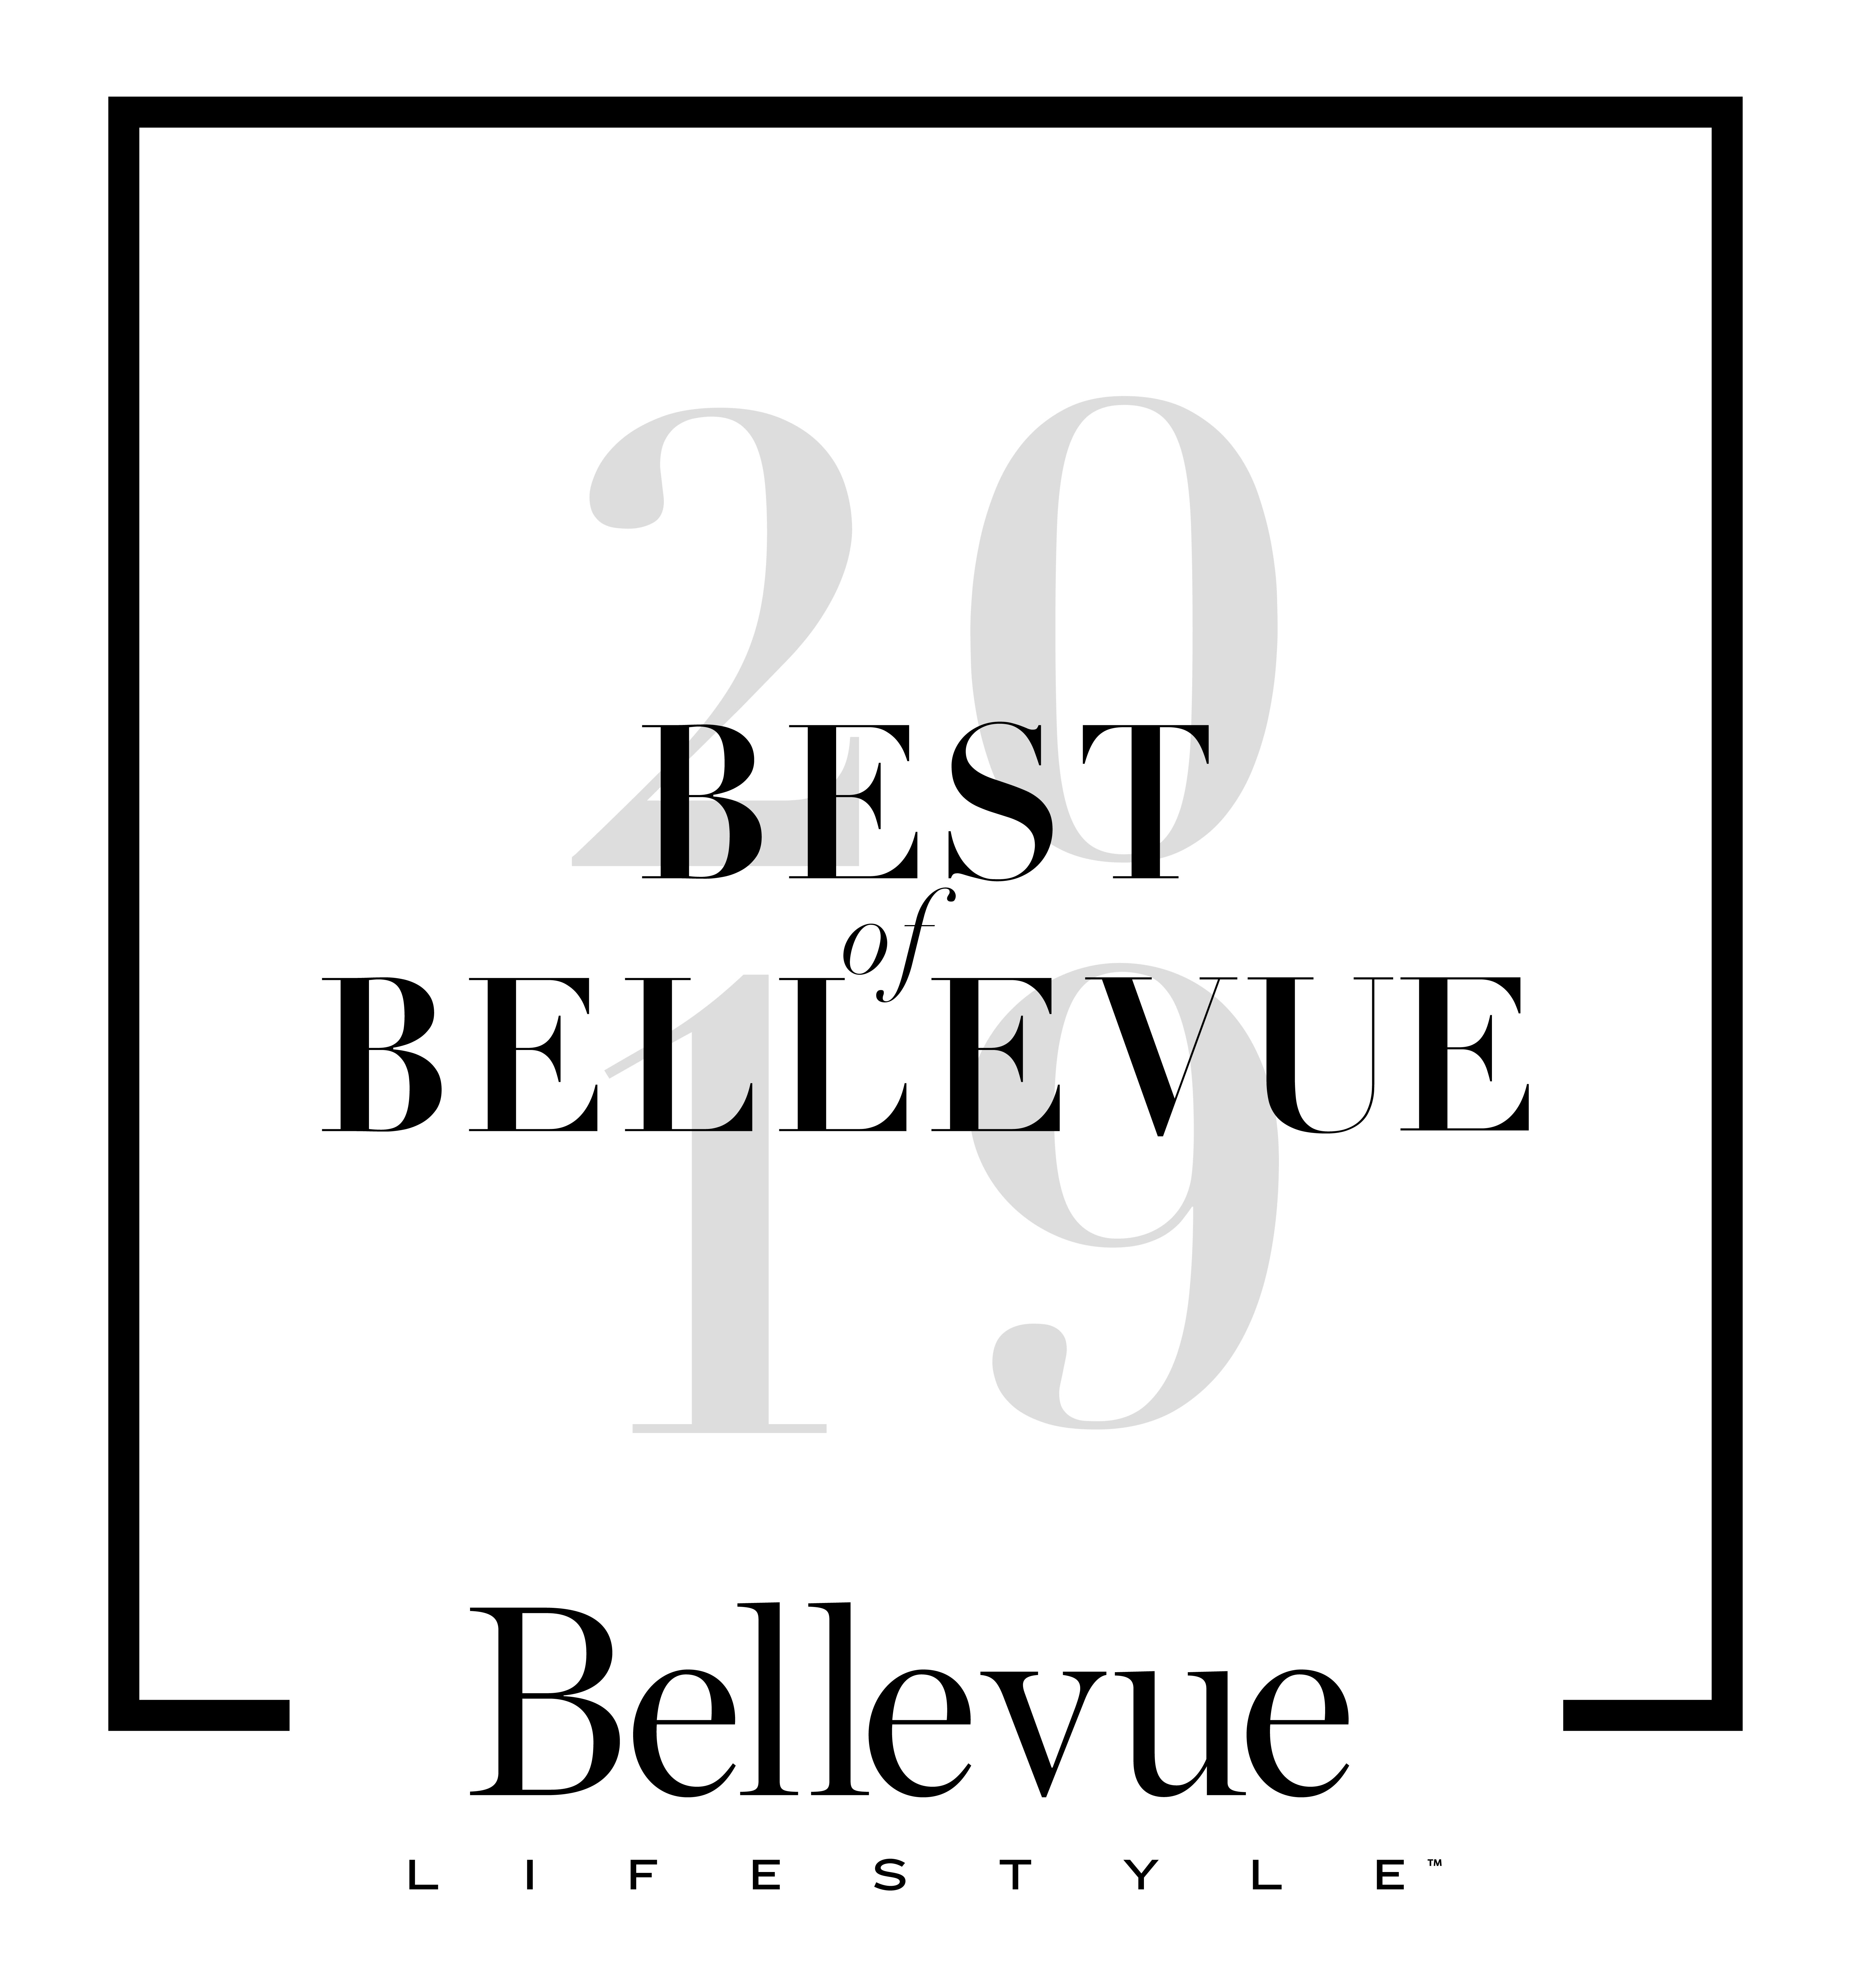 The Bellettini is awarded as best of Bellevue in 2019